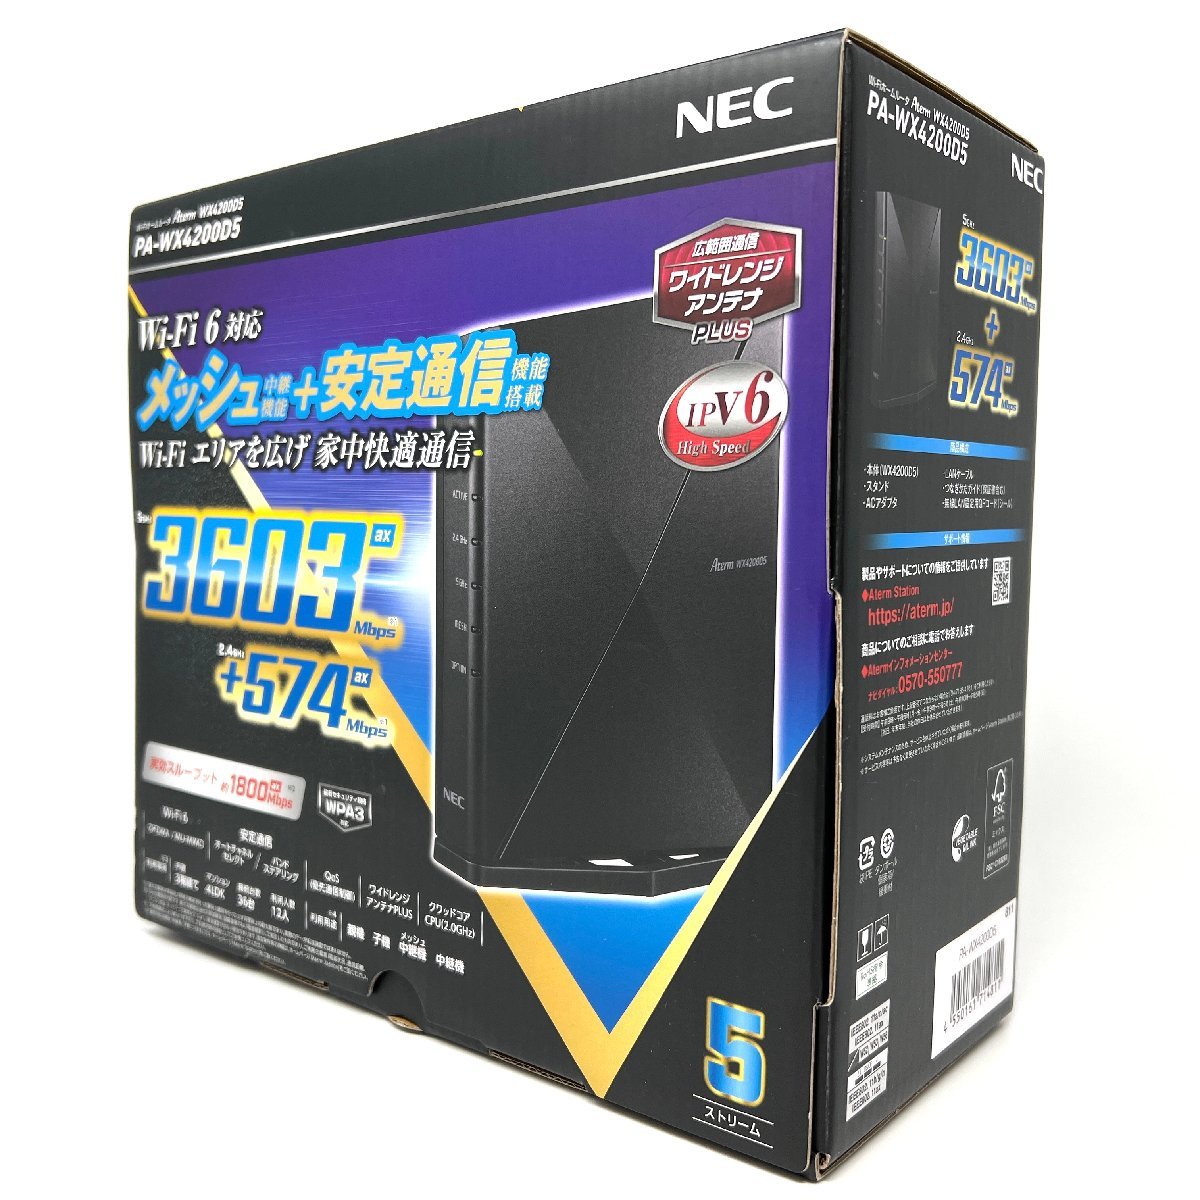 新品同様品/付属品完備】NEC AtermシリーズPA-WX4200D5 無線LAN